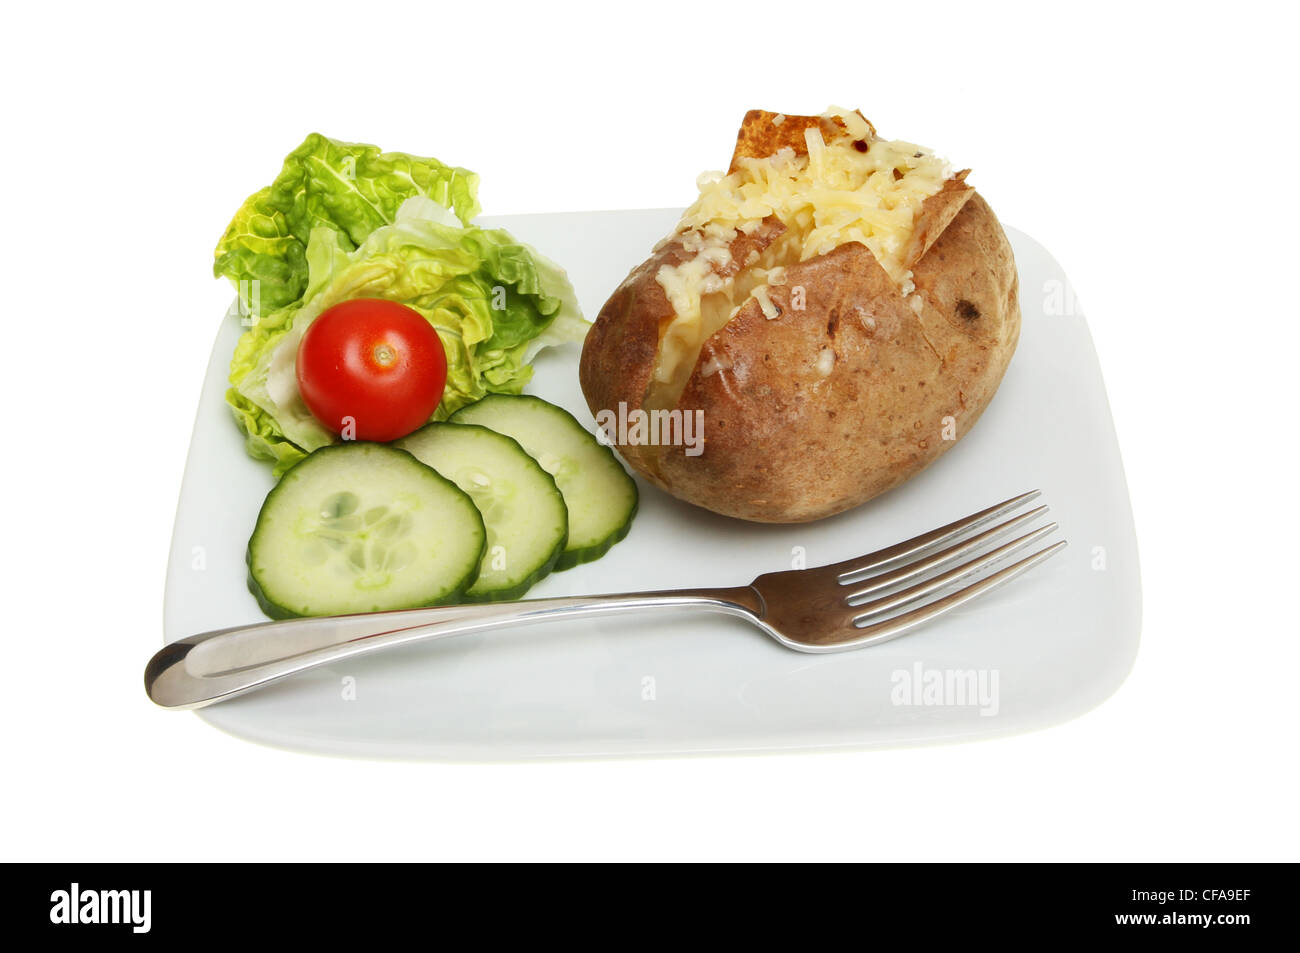 Une pomme de terre au fromage et salade à la fourchette sur une assiette blanche contre isolés Banque D'Images